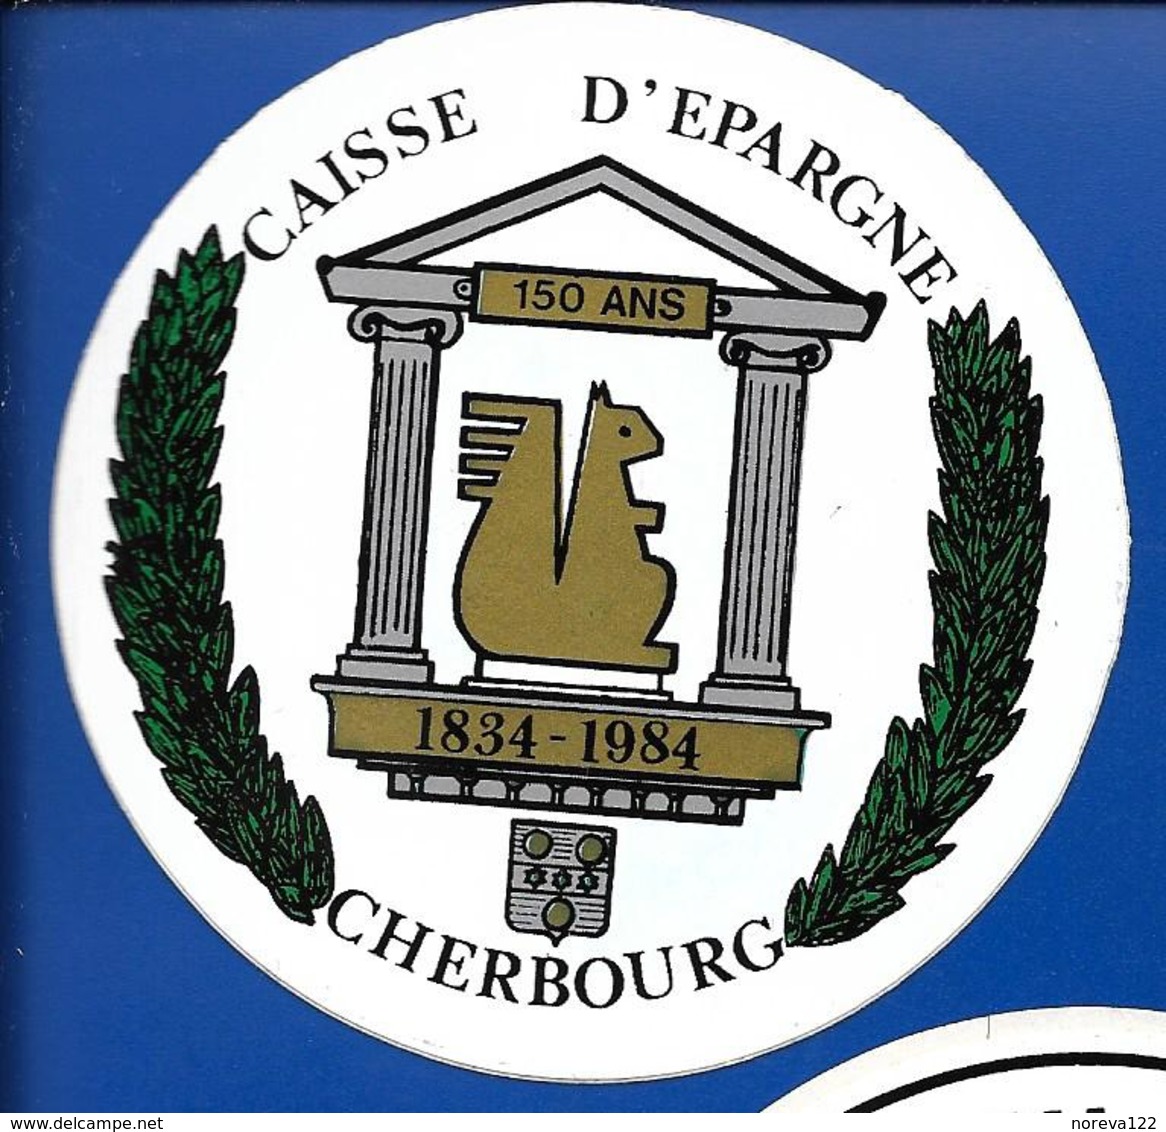 A.C. CAISSE D'EPARGNE CHERBOURG - Autocollants